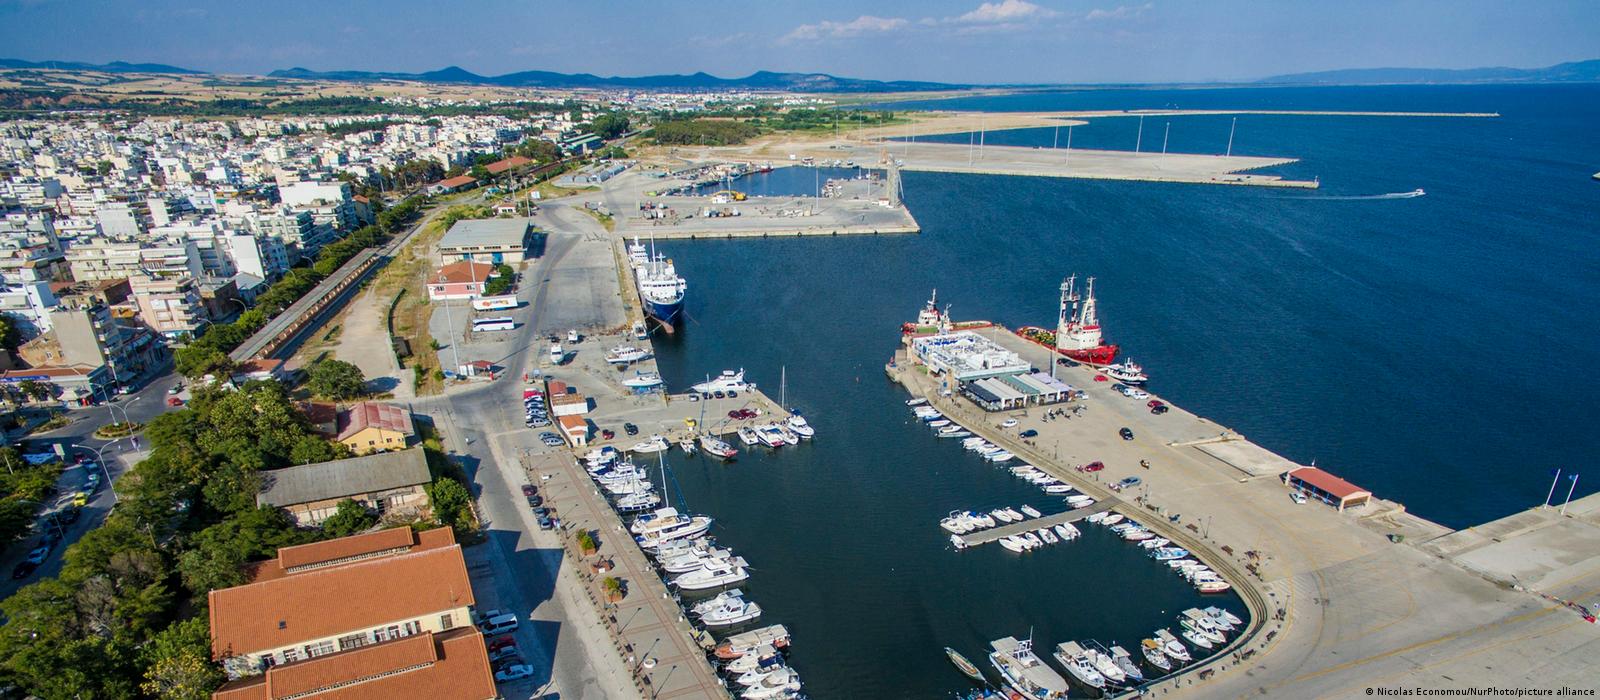 Yunanistan Dedeağaç limanını özelleştirmekten vazgeçti